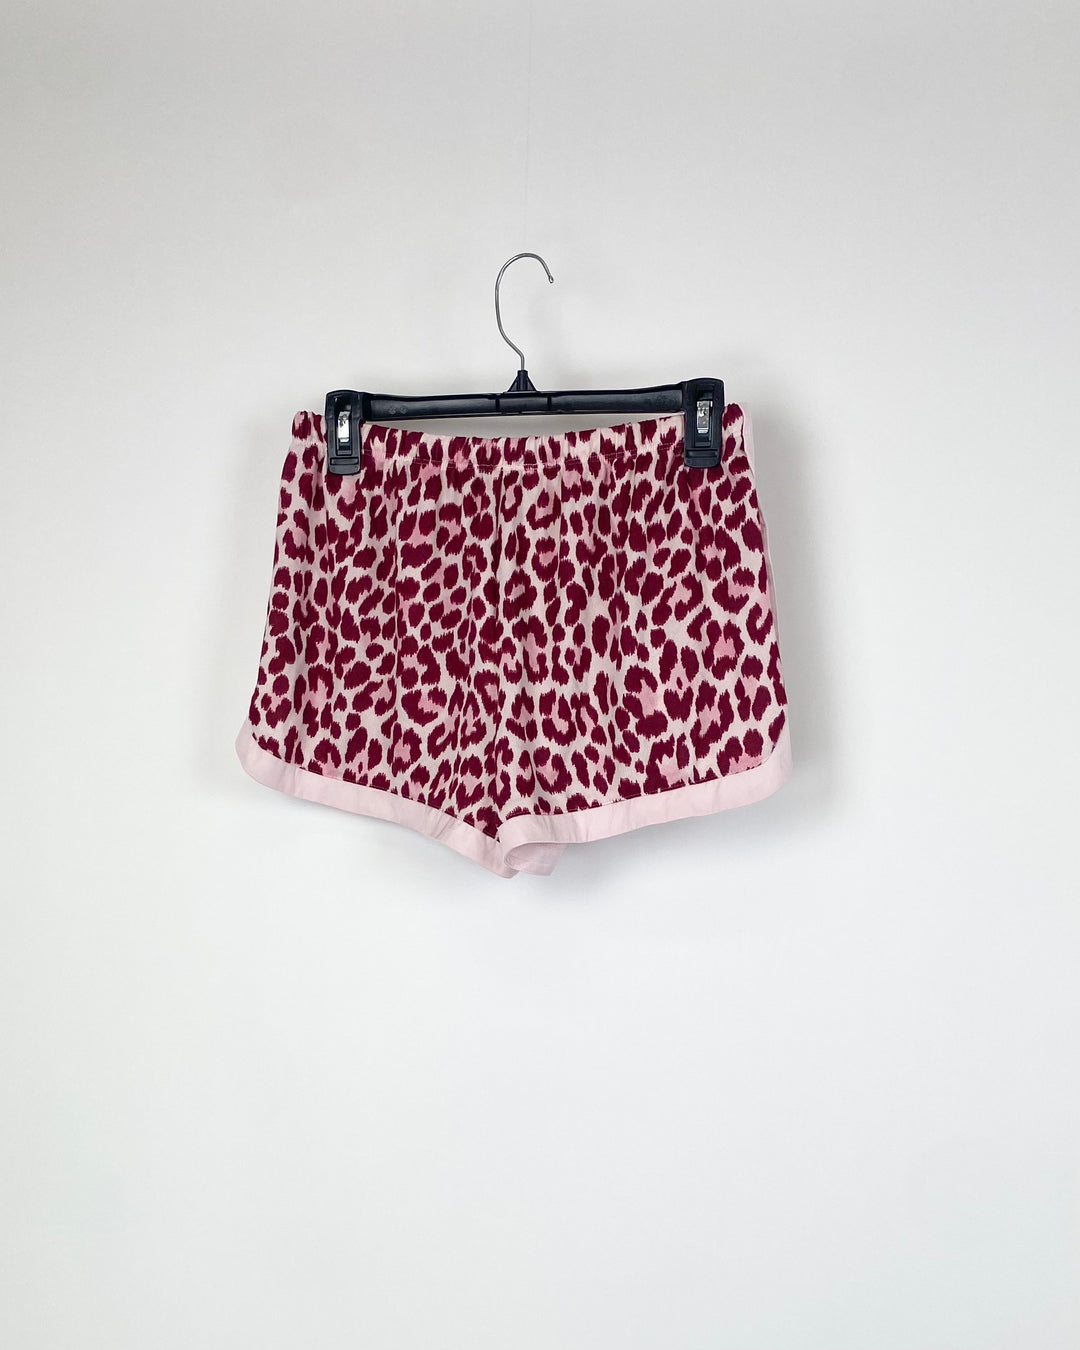 Soft Pink Cheetah Print Pajama Shorts - Small